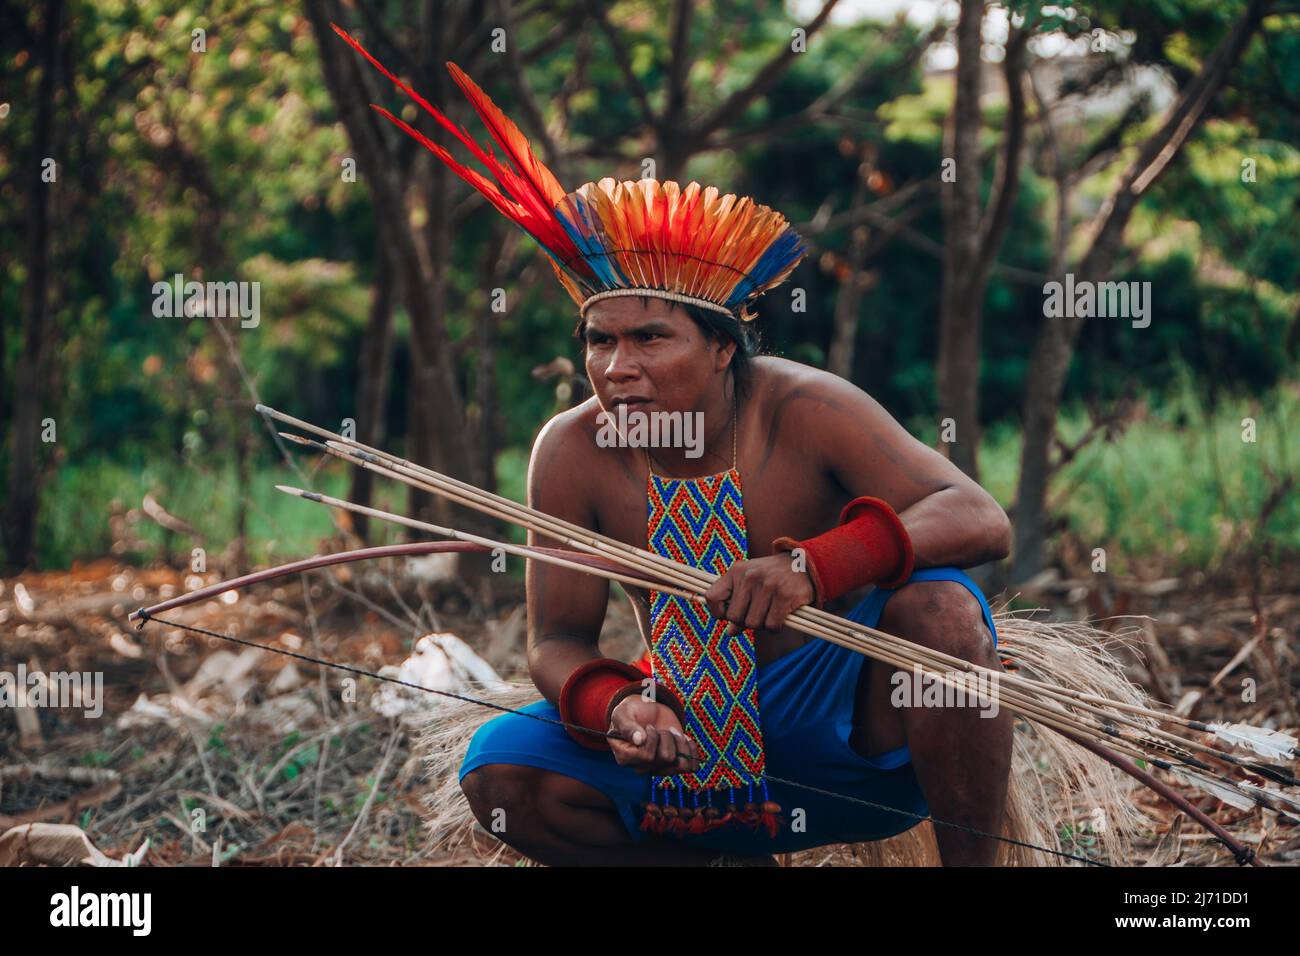 Homme indigène d'une tribu amazonienne brésilienne portant l'adresse de plume appelée cocar. Rivière Xingu, Amazone, Brésil. Jogos Indígenas, 2009. Banque D'Images